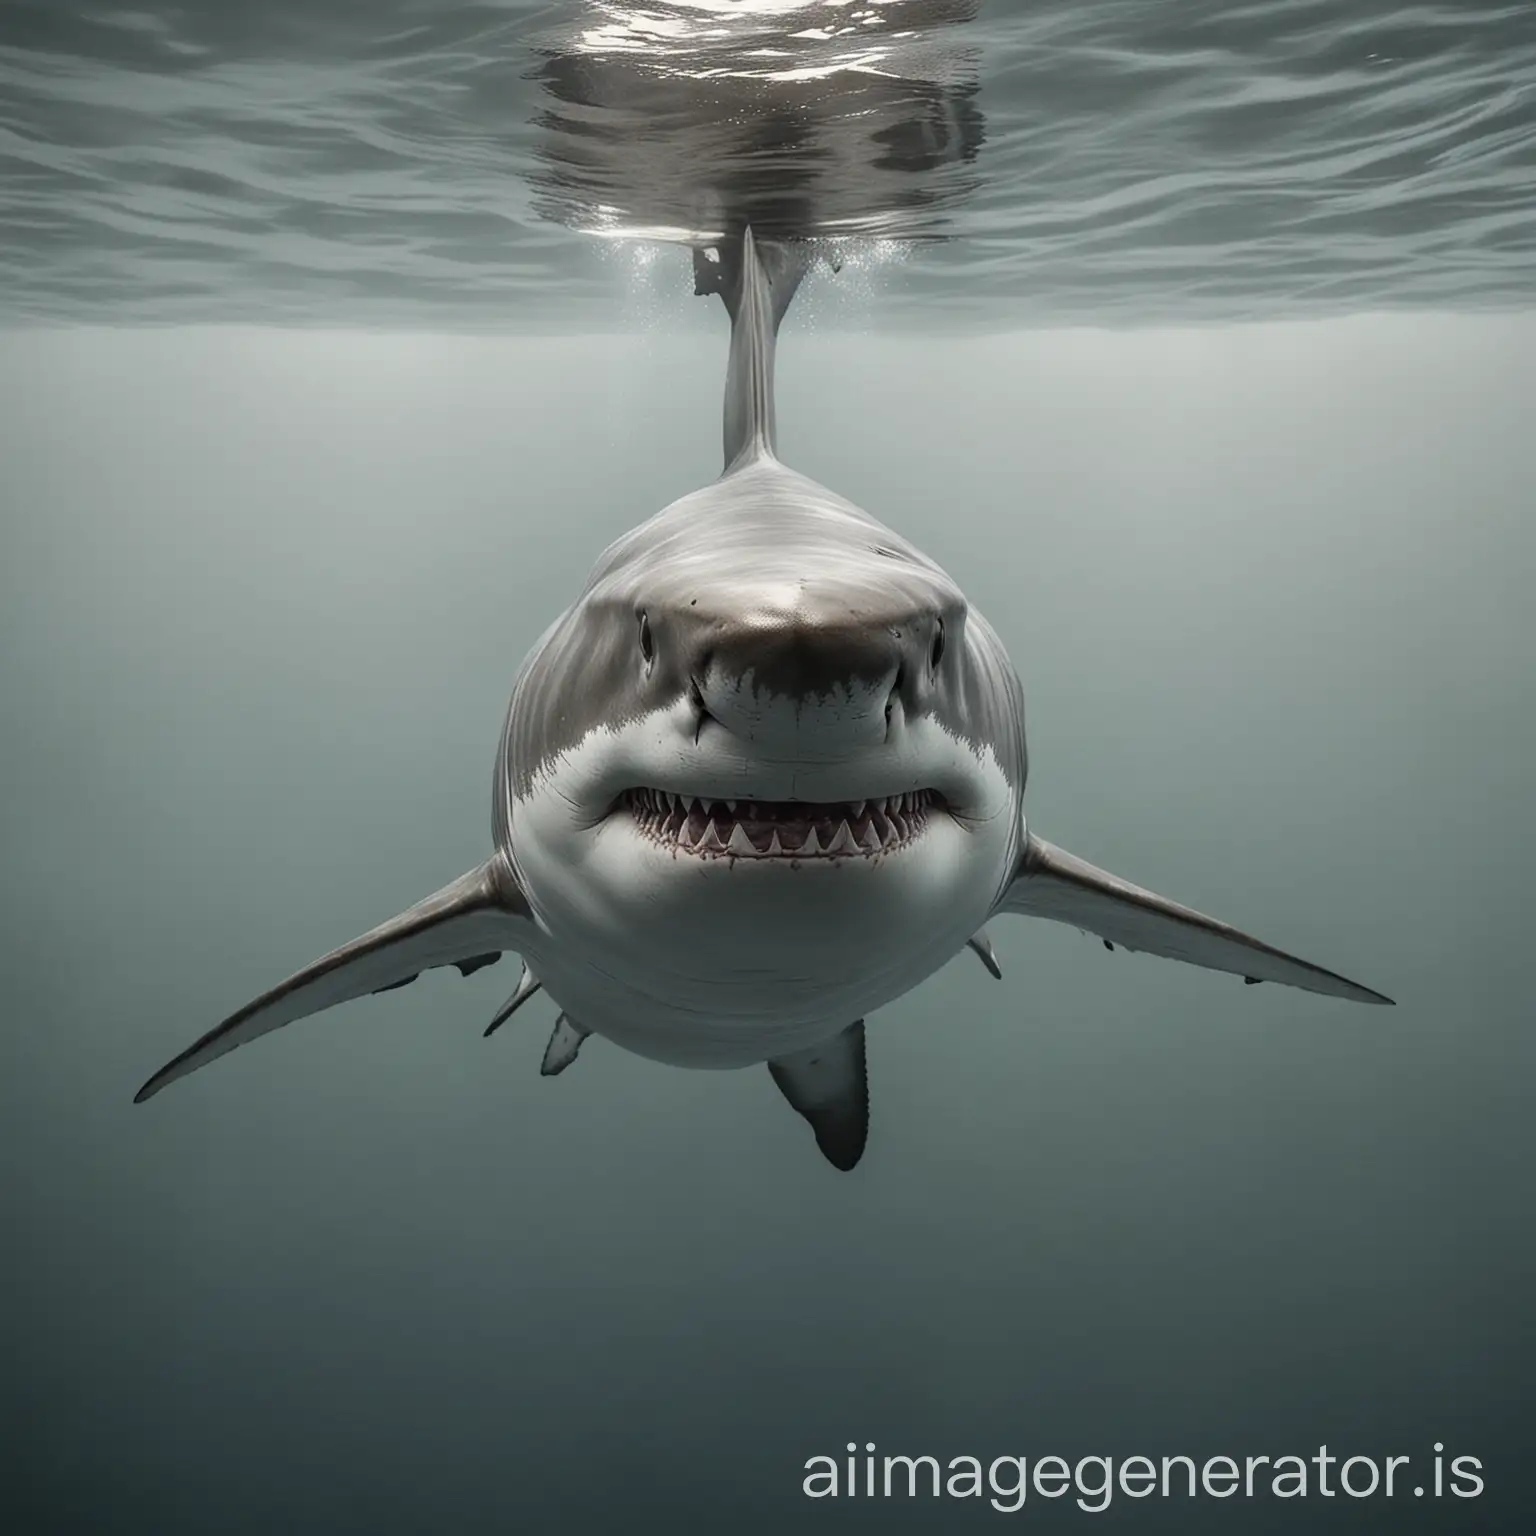 Realistic-Great-White-Shark-Swimming-Underwater